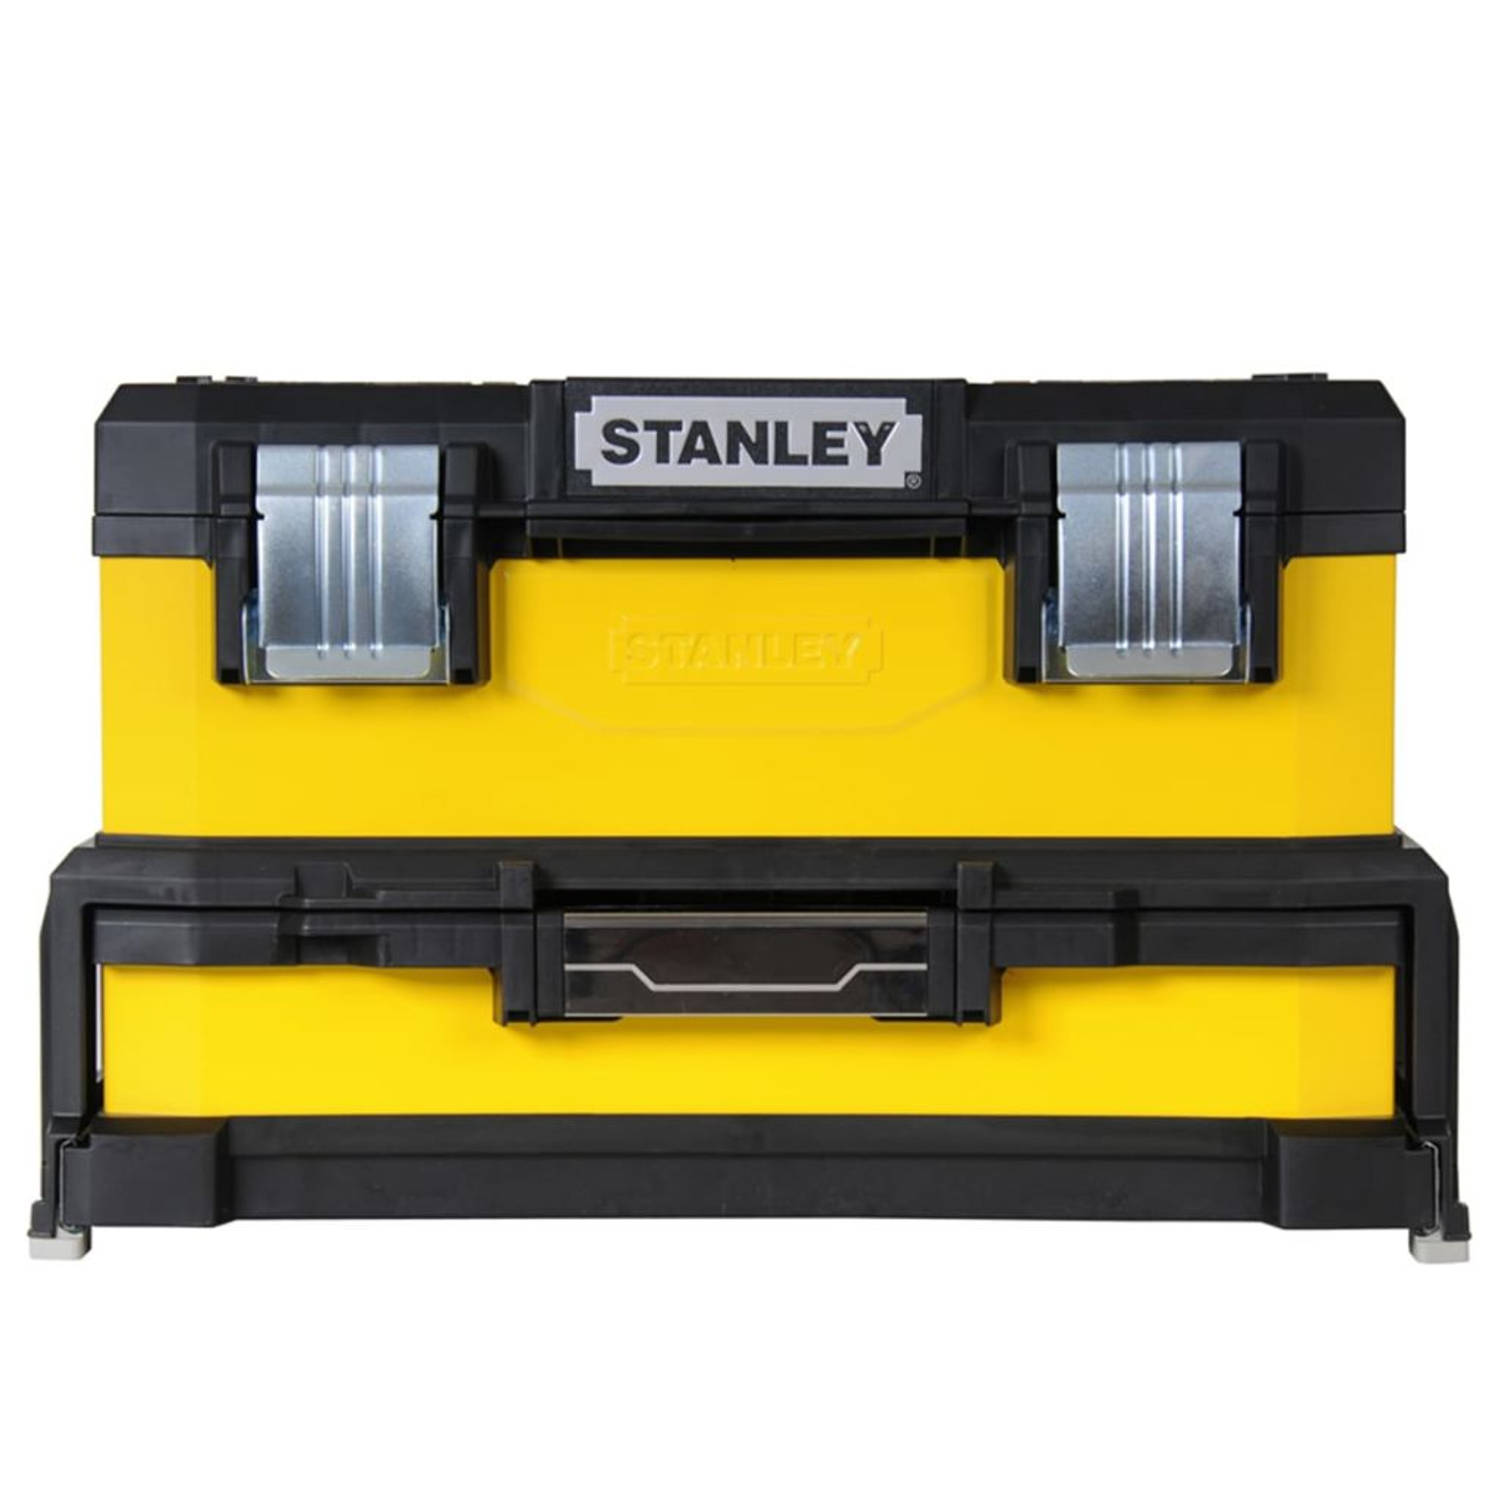 Stanley gereedschapskoffer inclusief lade